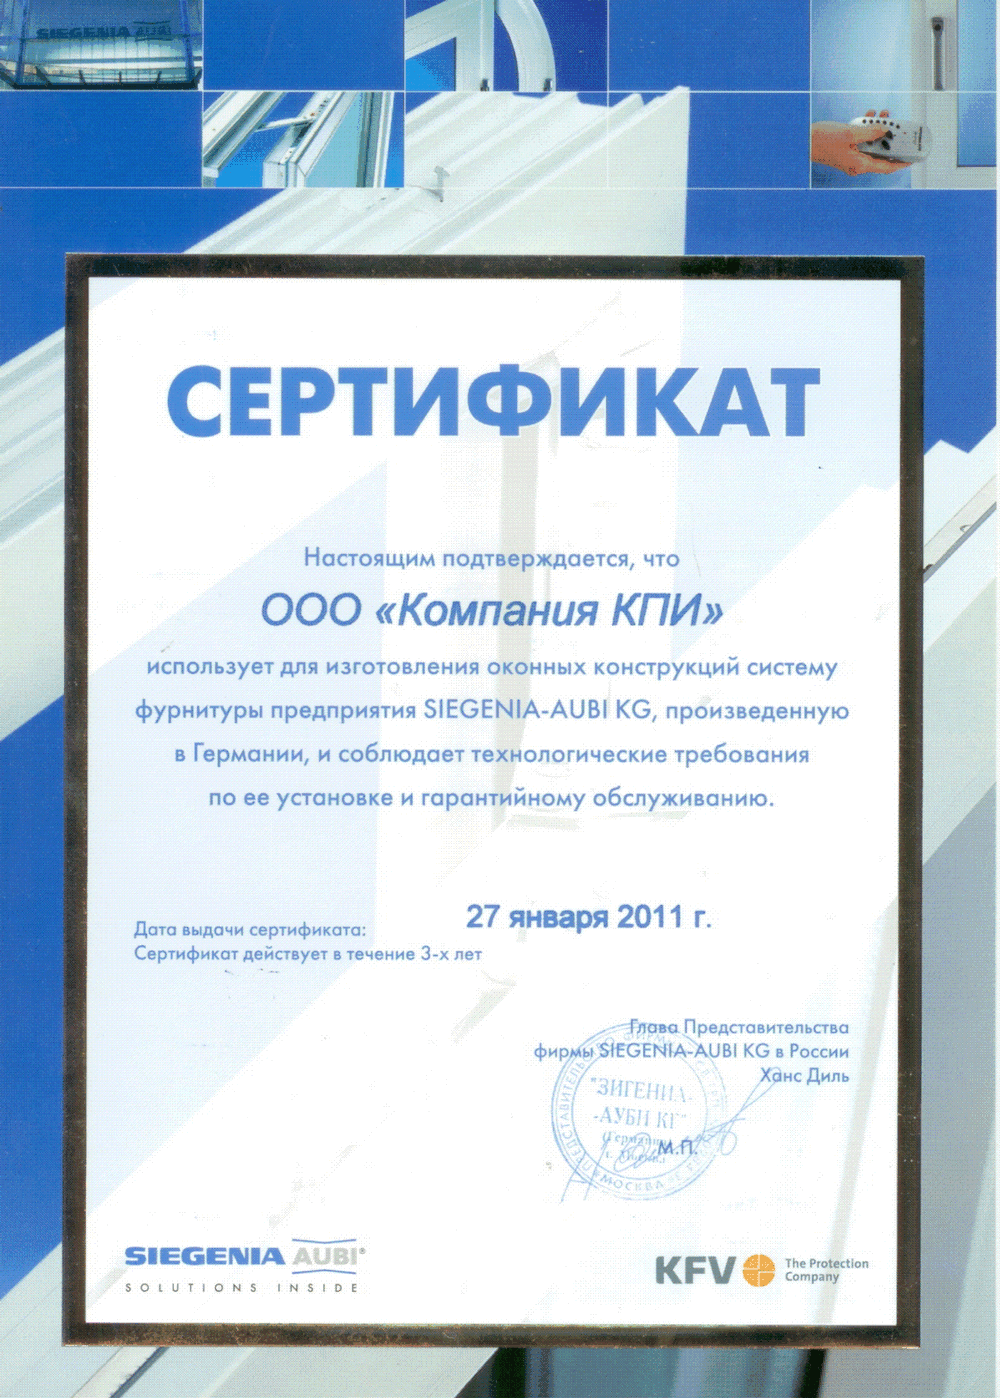 Сертификат об использовании оконных конструкций системы фурнитуры предприятия SIEGENA-AUBI KG